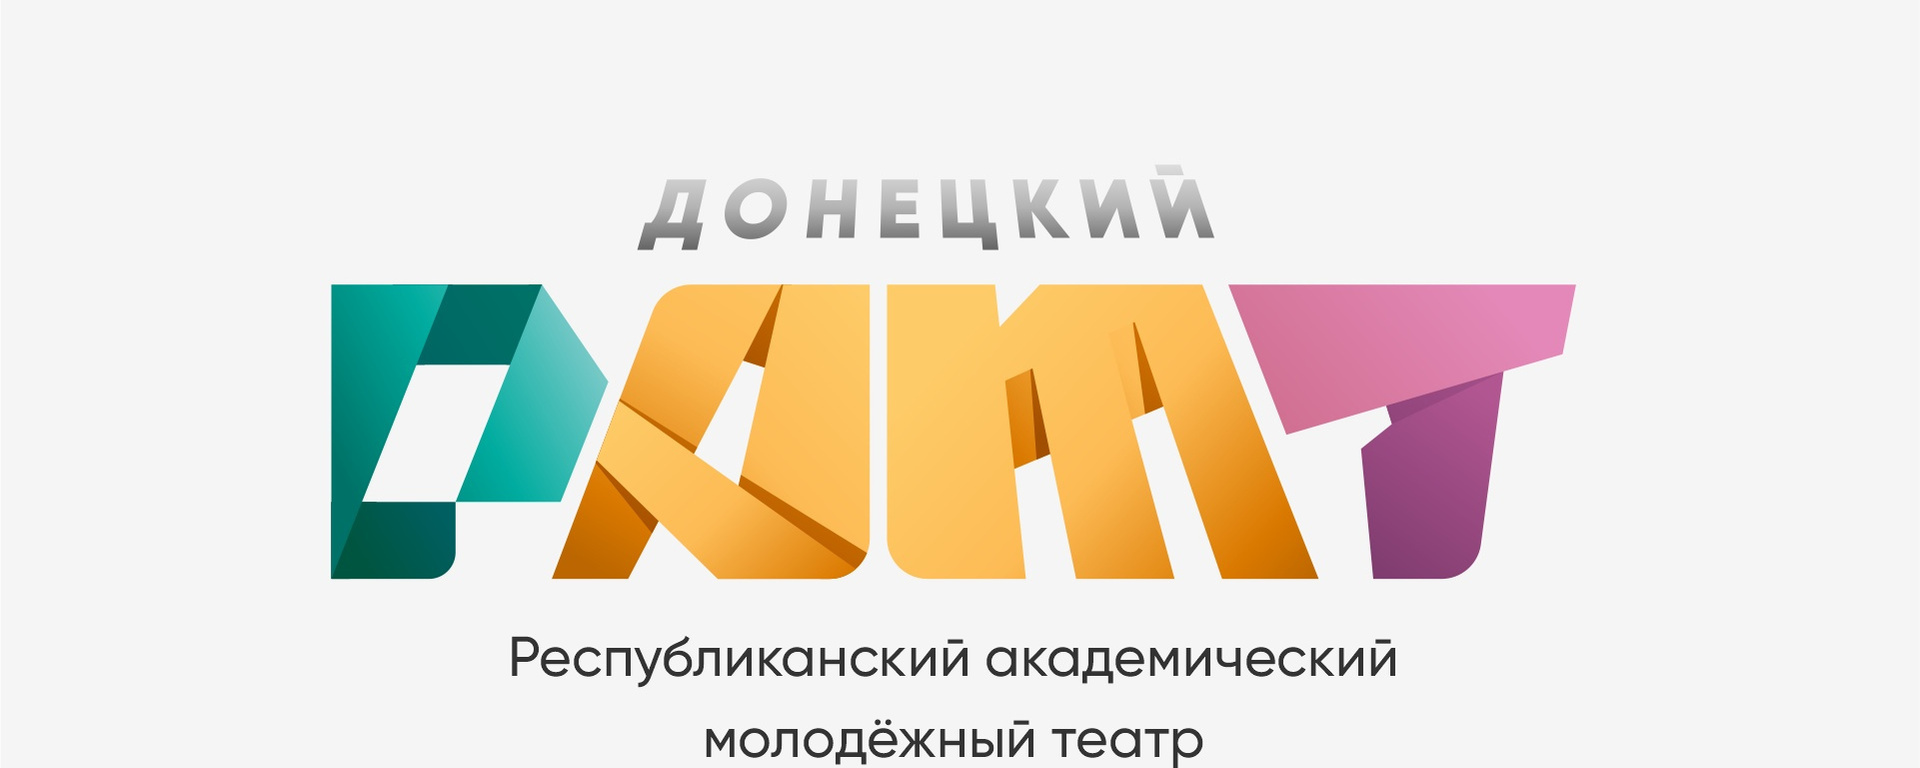 В городах ЦФО и Крыму покажут спектакль донецкого театра о событиях в Донбассе